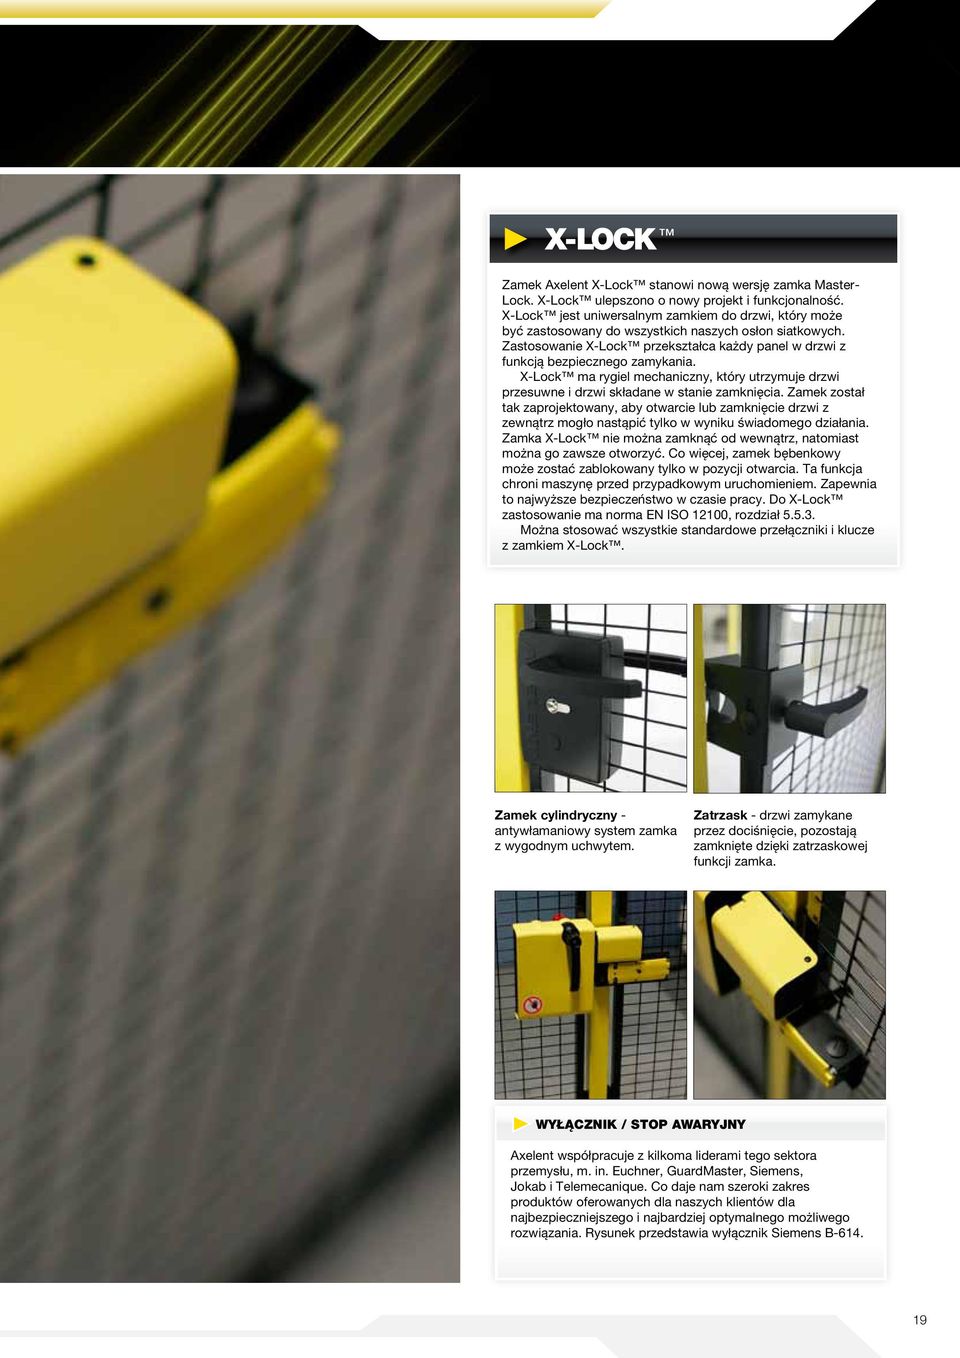 X-Lock ma rygiel mechaniczny, który utrzymuje drzwi przesuwne i drzwi składane w stanie zamknięcia.